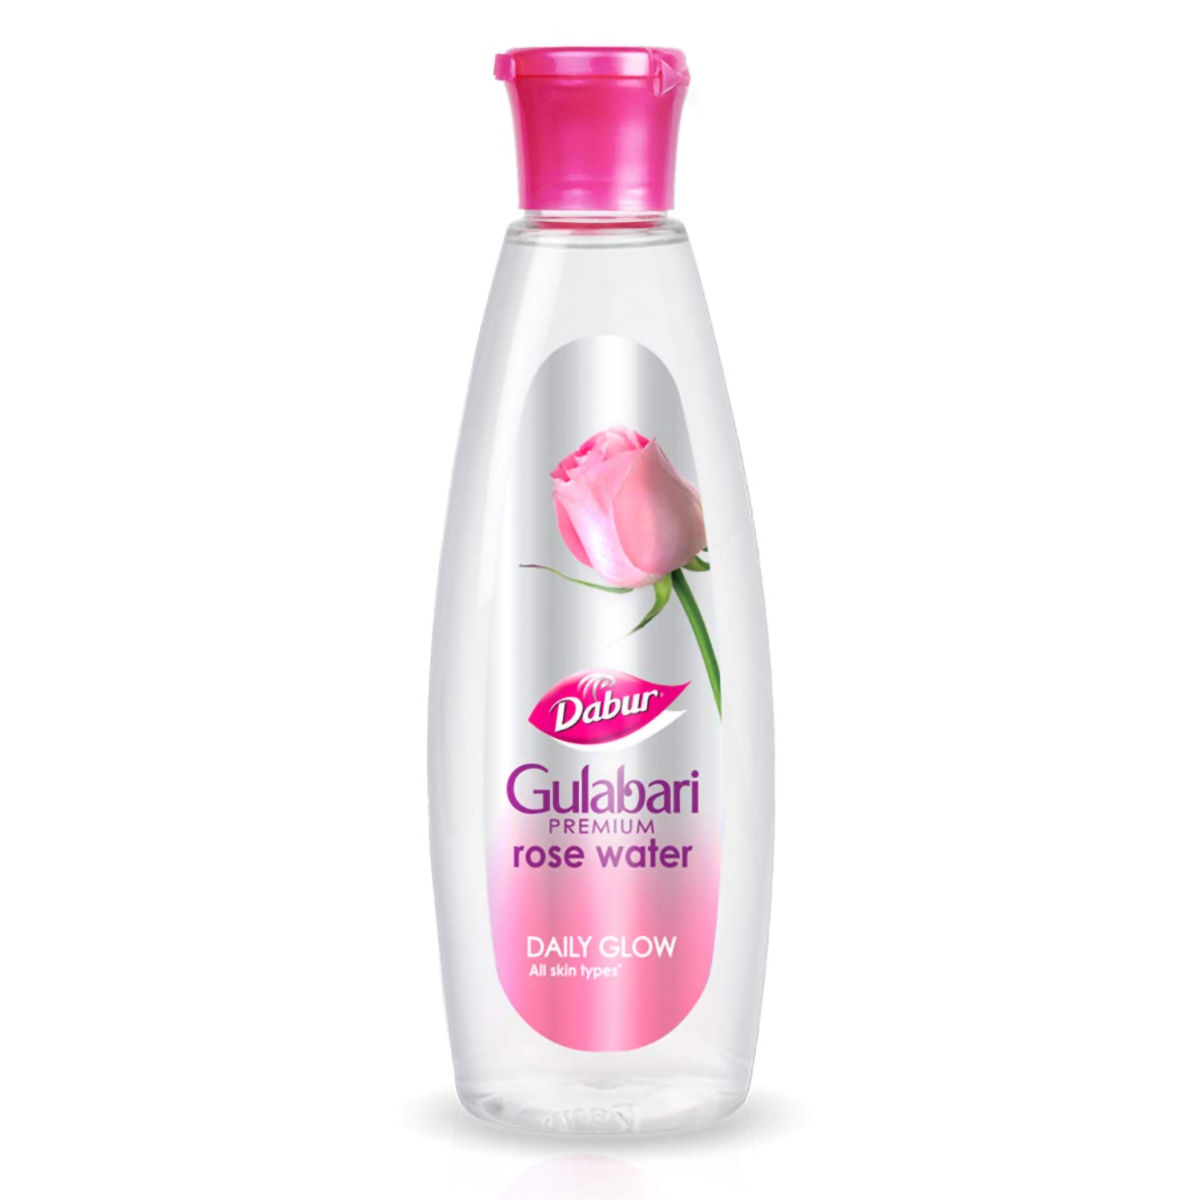 Buy Dabur Gulabari Premium Rose Water, 59 ml Online